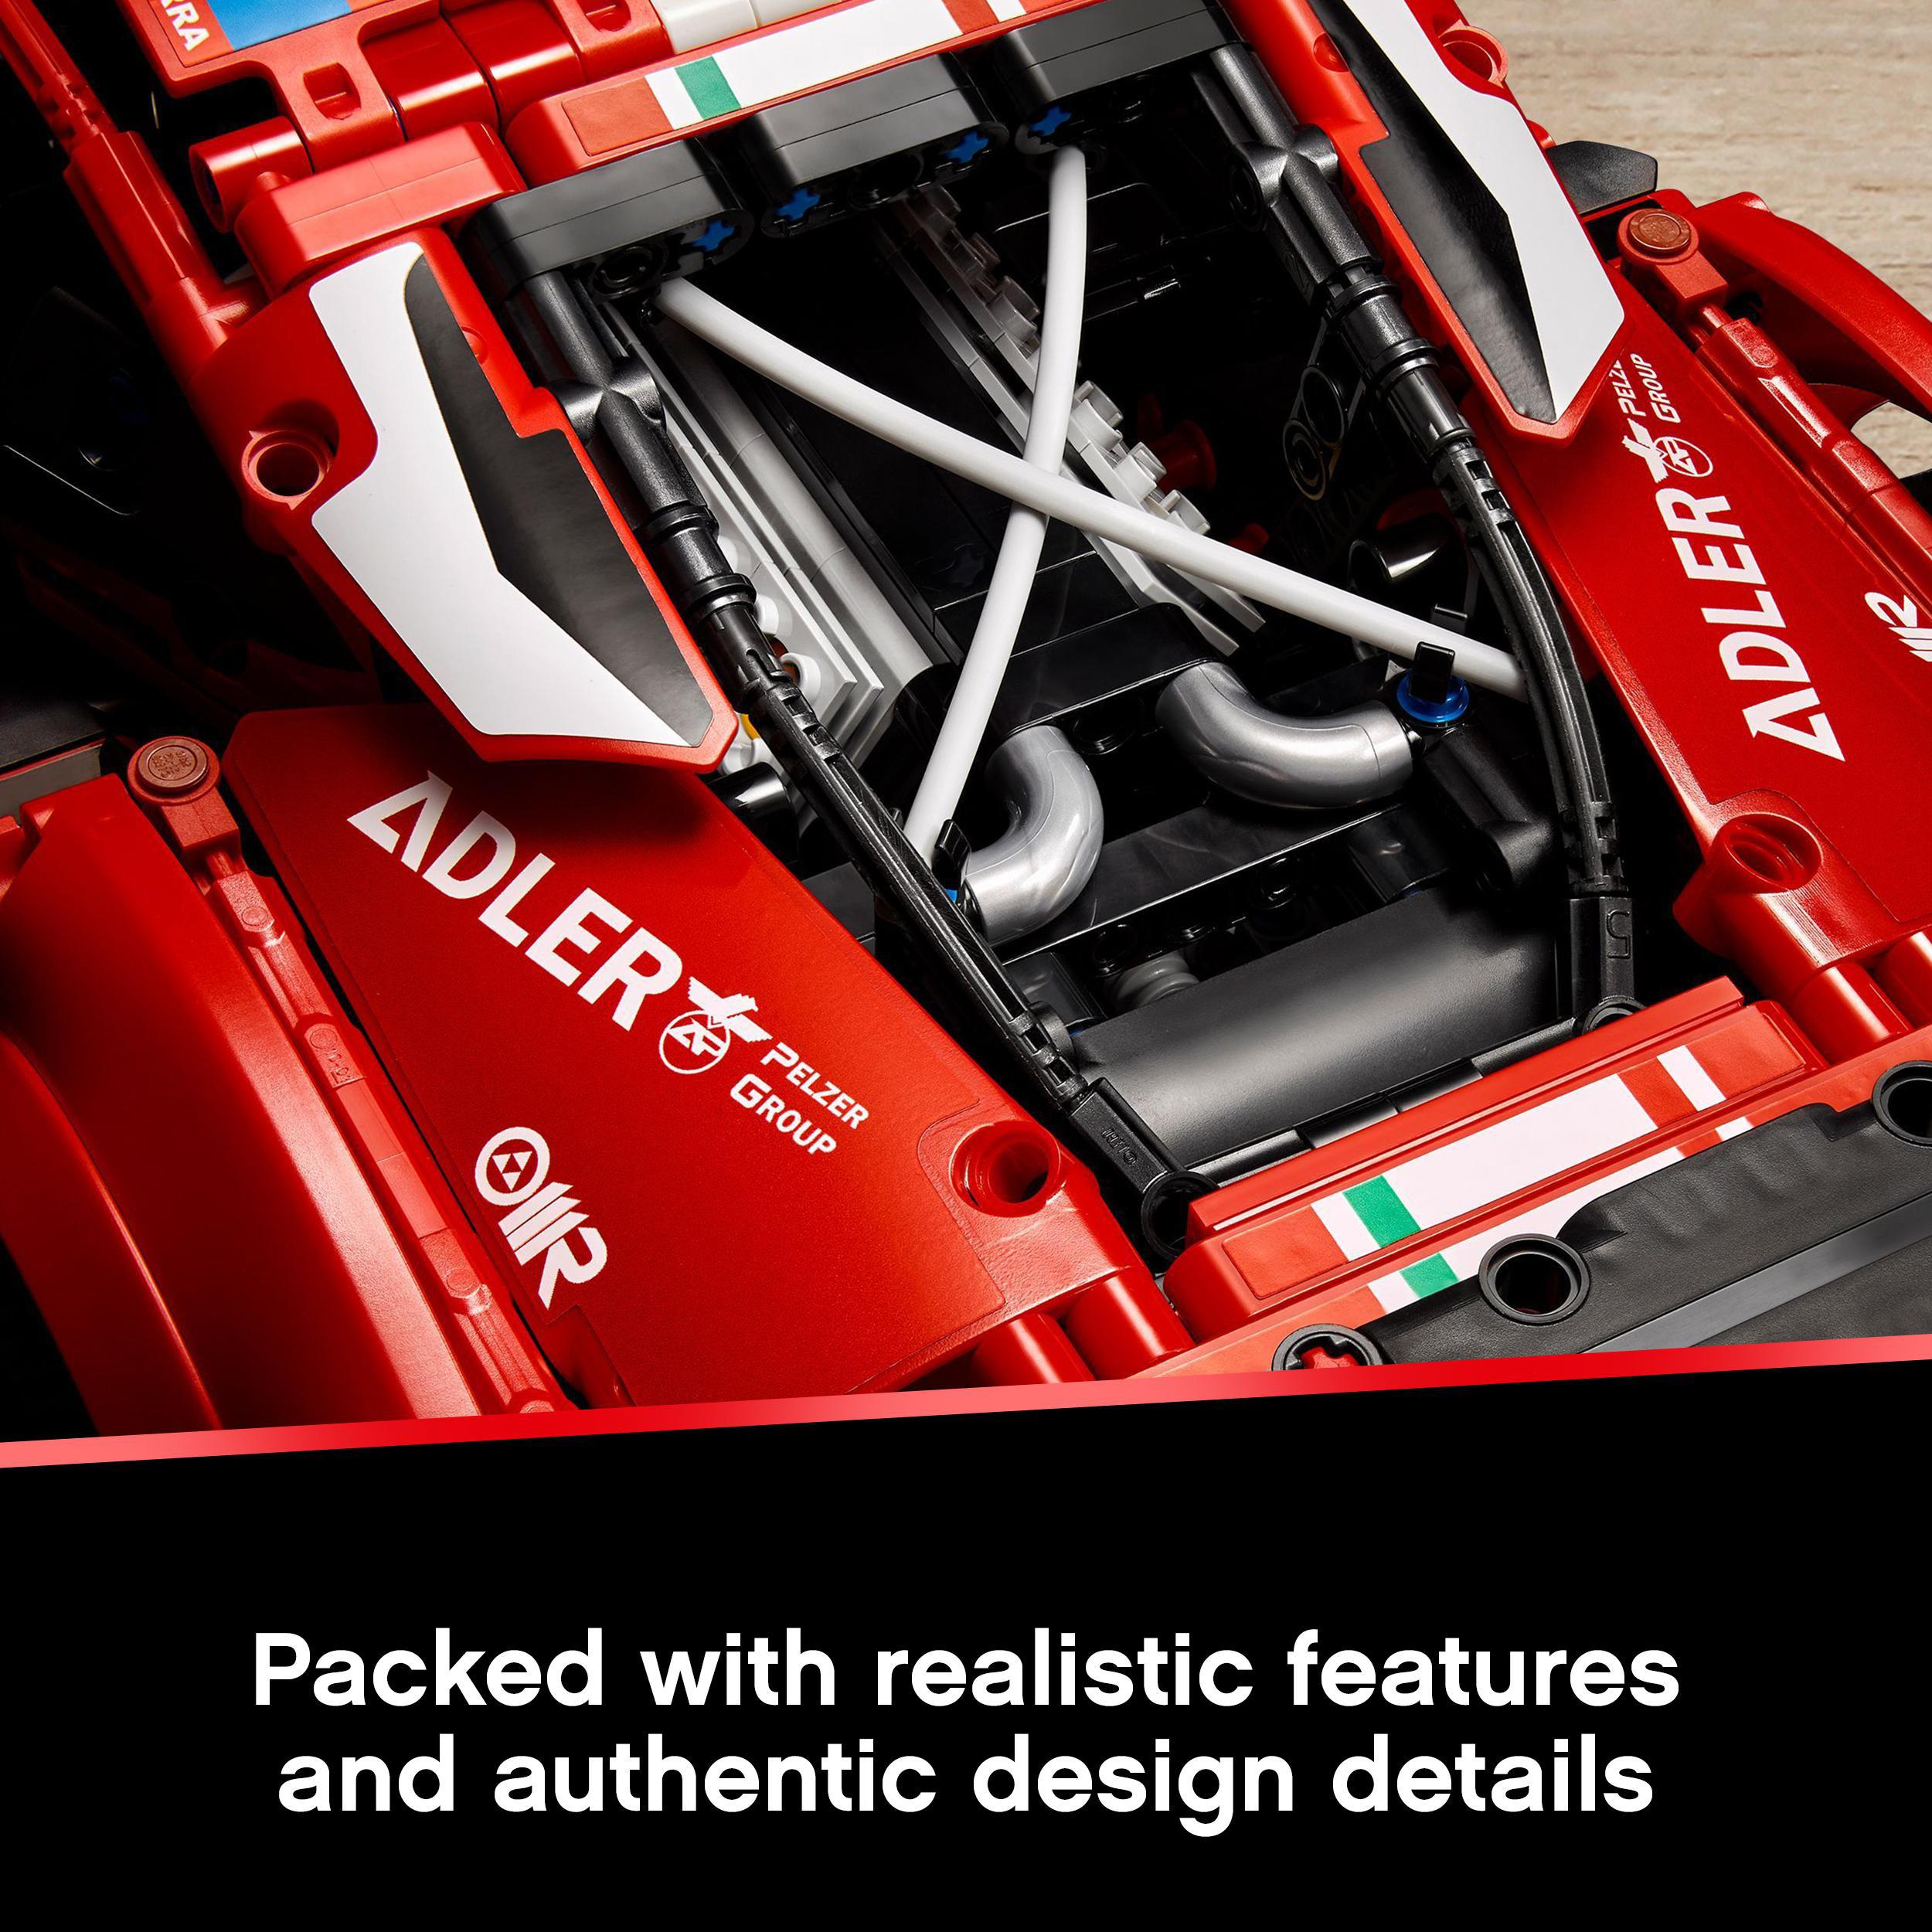 LEGO® Technic Ferrari 488 GTE AF Corse #51 Set 42125 Default Title